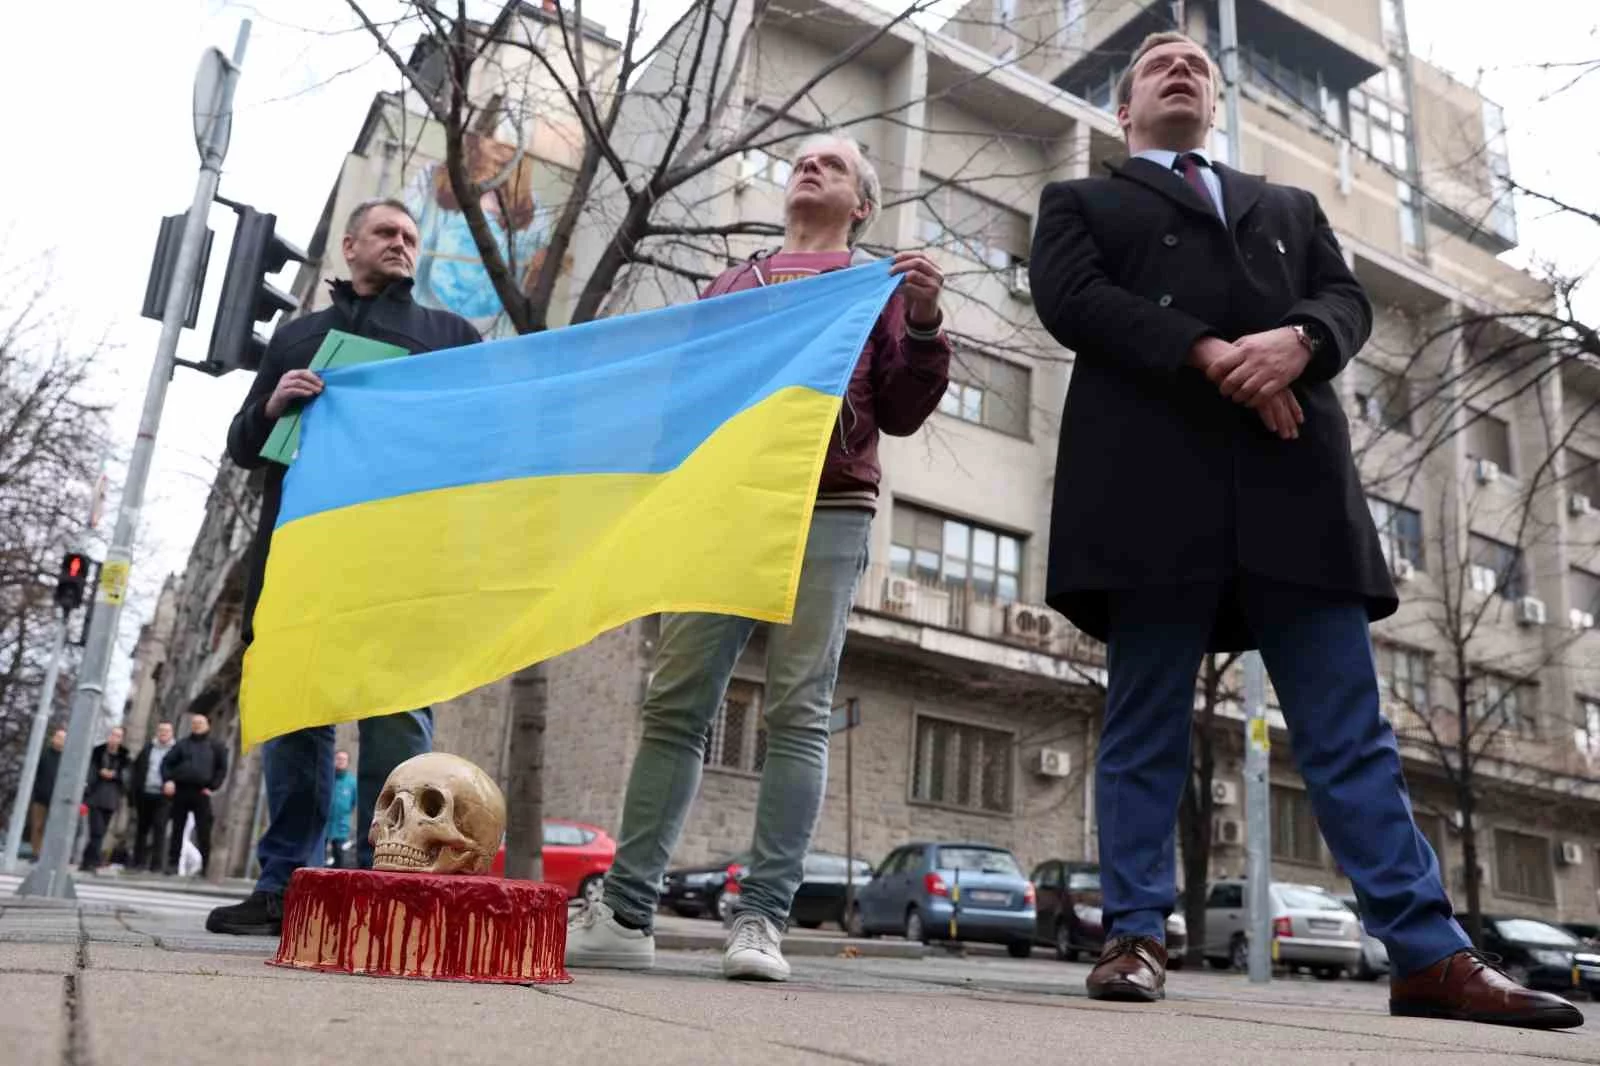 Rusyanın Belgrad Büyükelçiliğinin önüne “ölüm pastası” bırakıldı